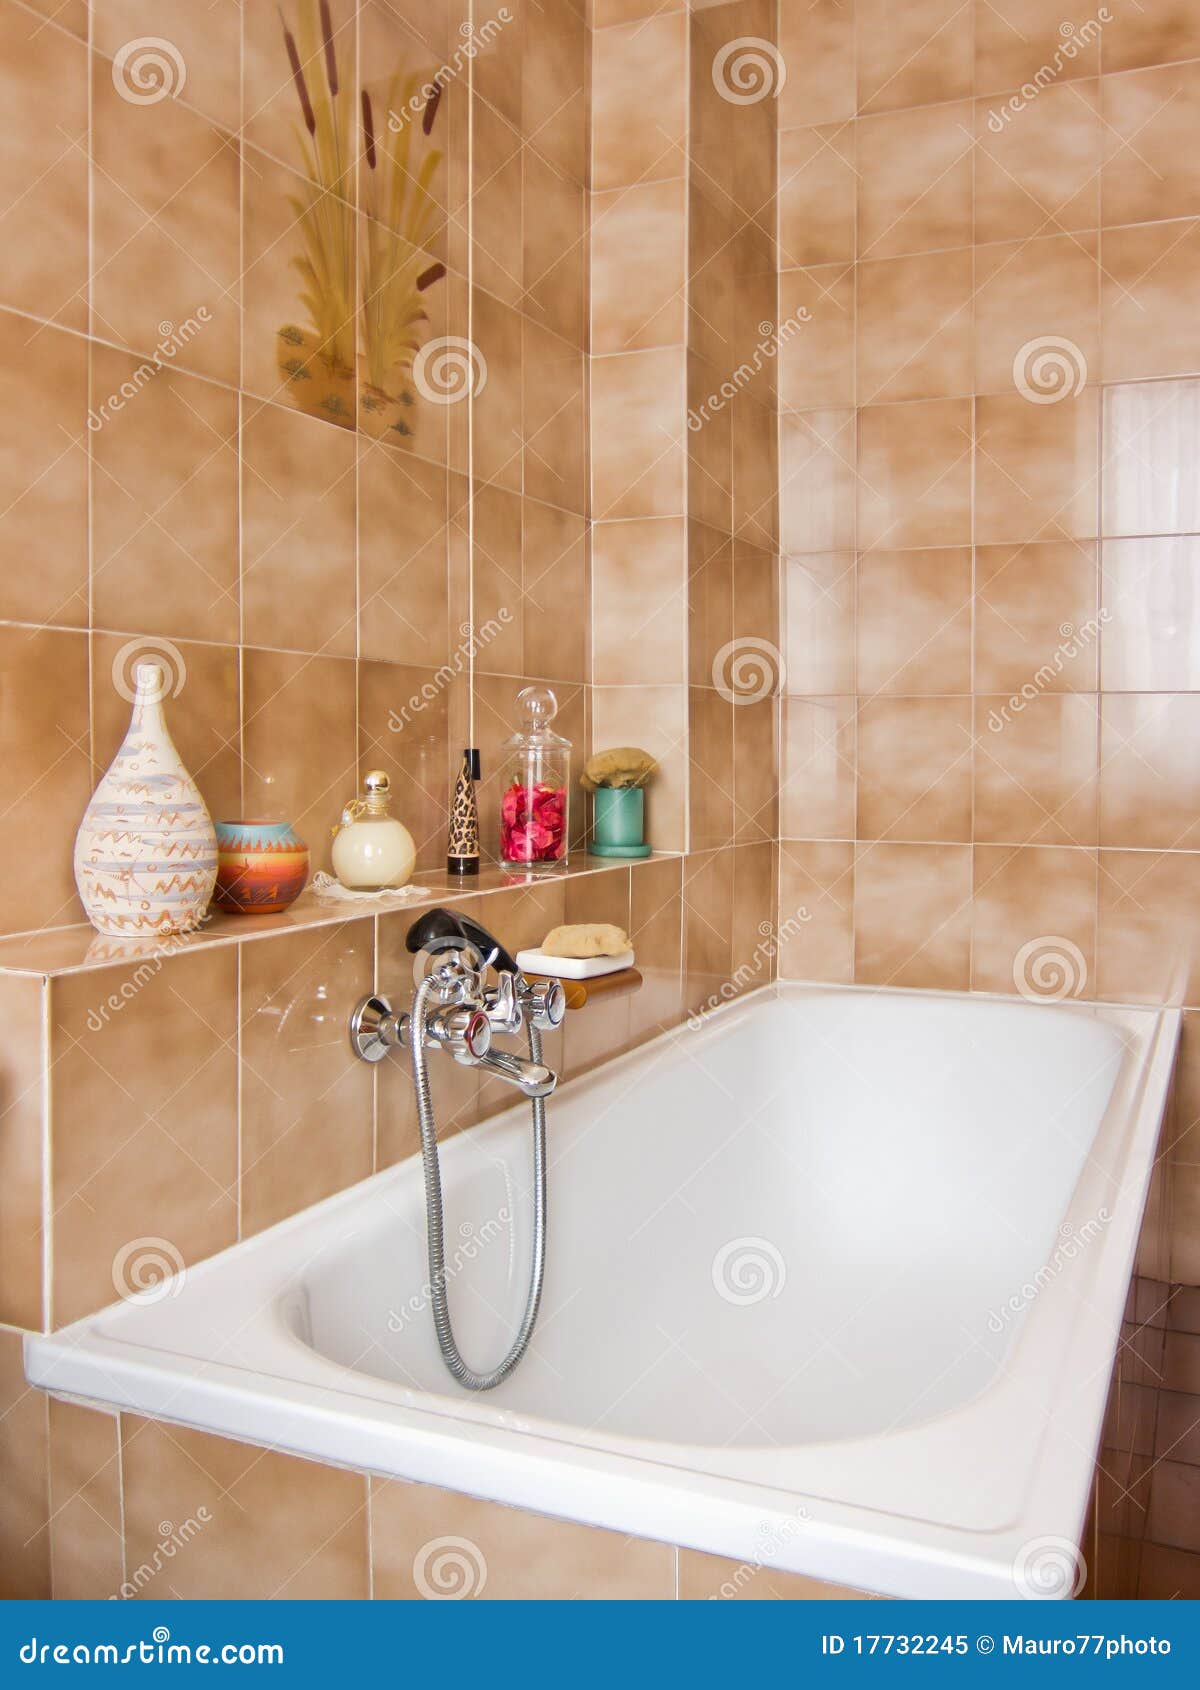 Elegantes Badezimmer stockbild Bild von luxus entwerfer 17732245